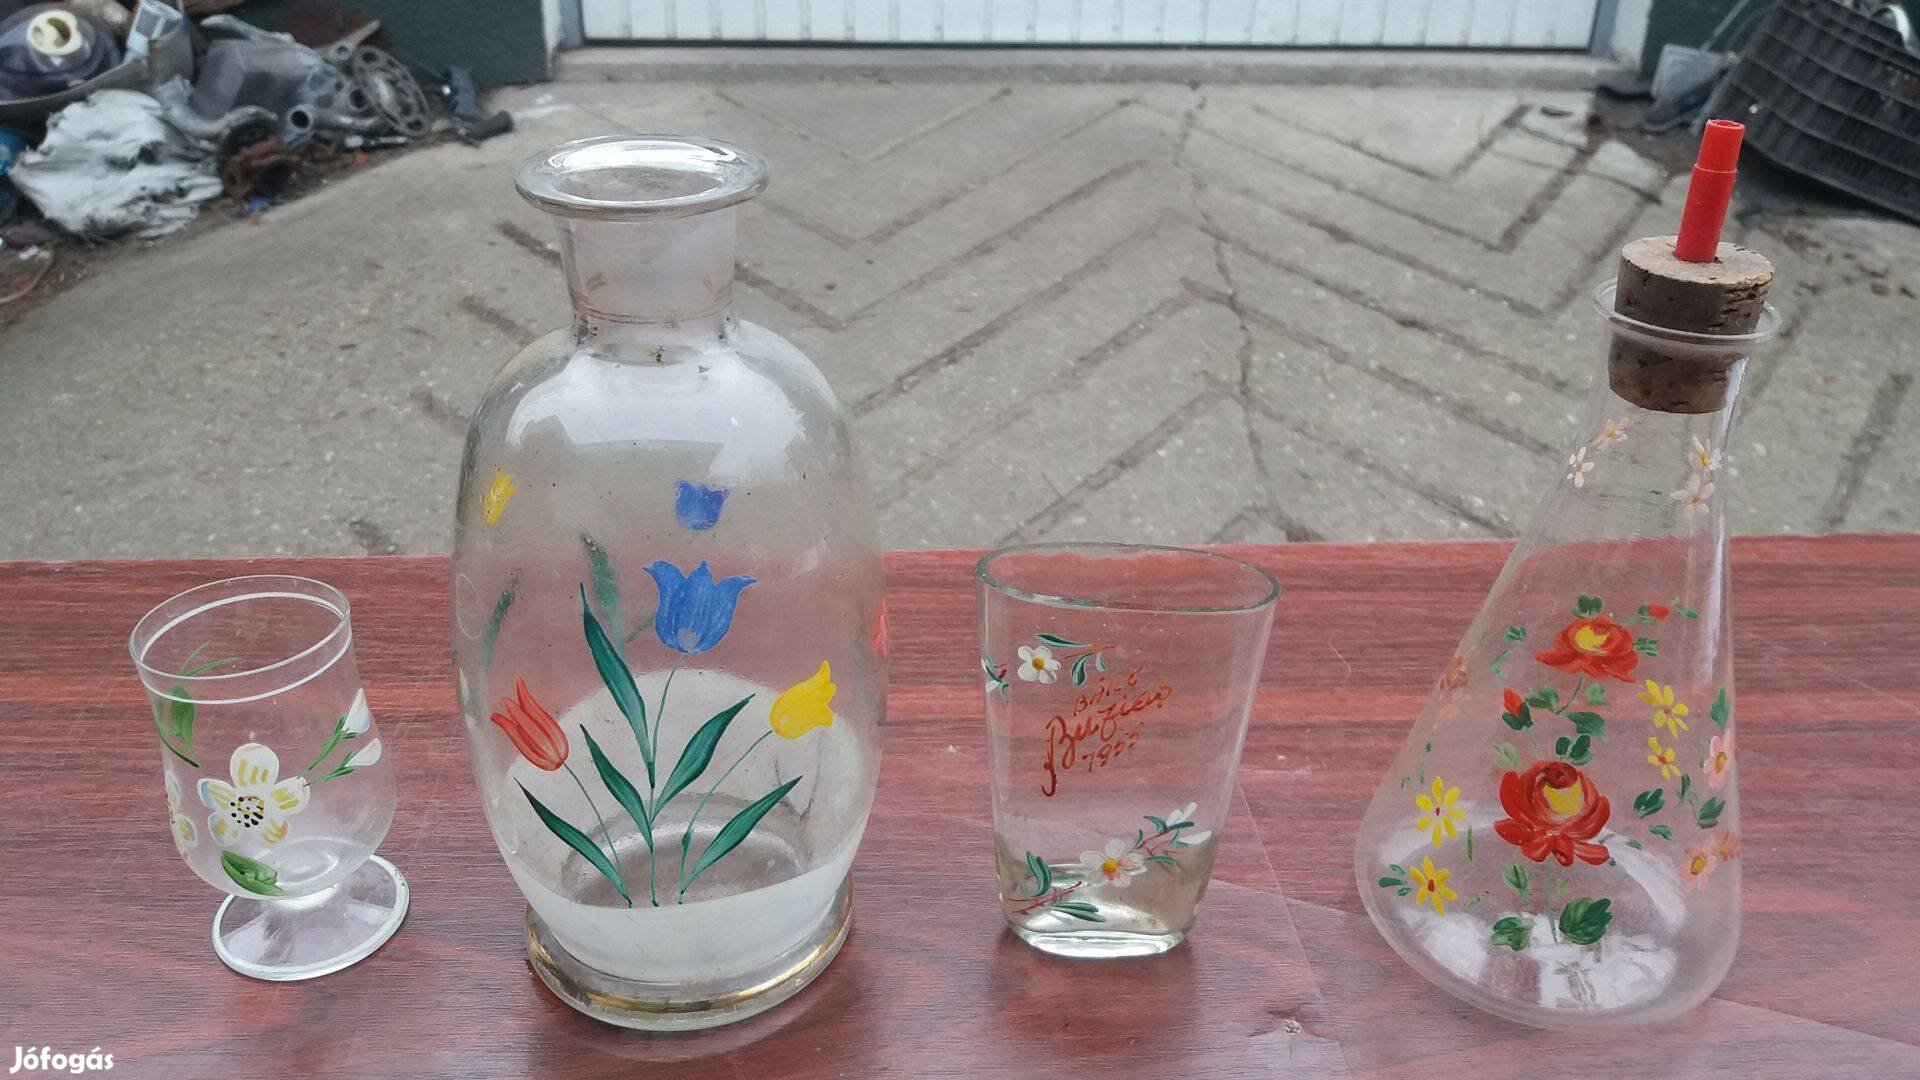 4 db antik festett üveg tárgy váza pohár stb debreceni átad posta